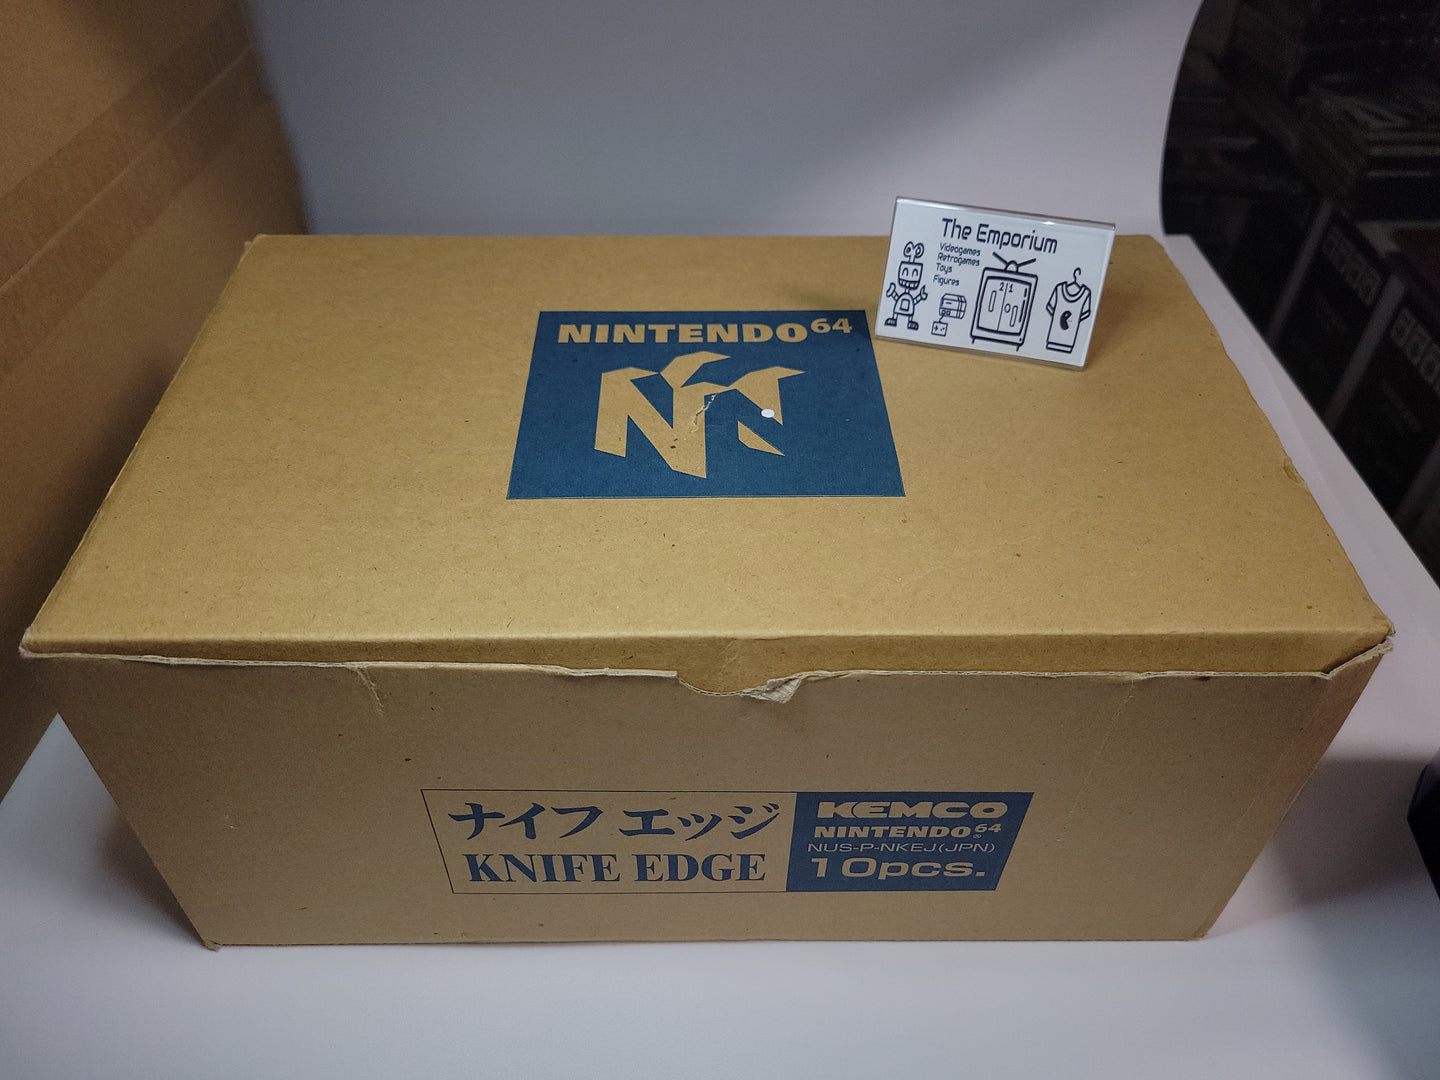 Knife Edge brand new old stock (full shipping box set of 10 games) - Nintendo64 N64 Nintendo 64